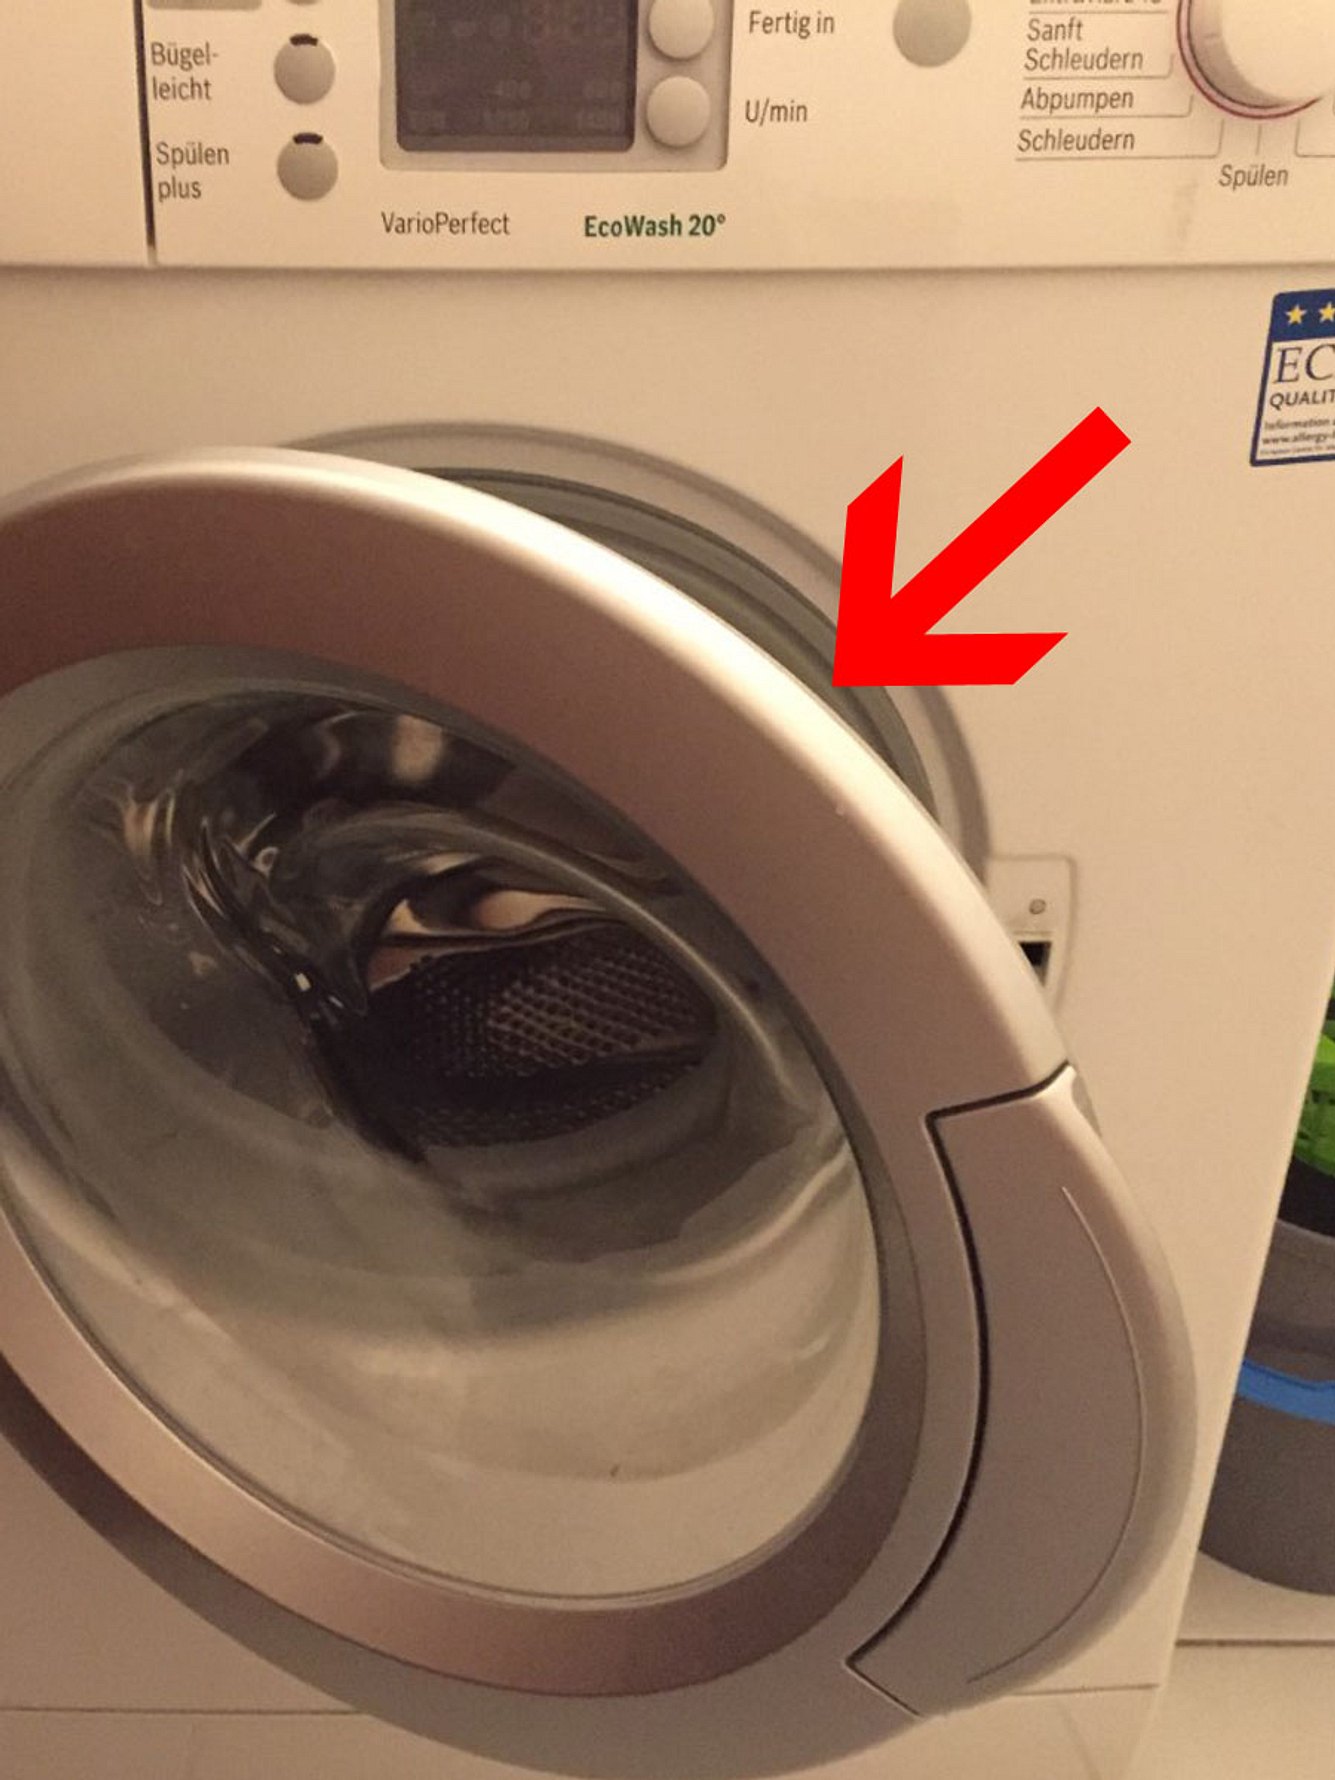 socken waschmaschine